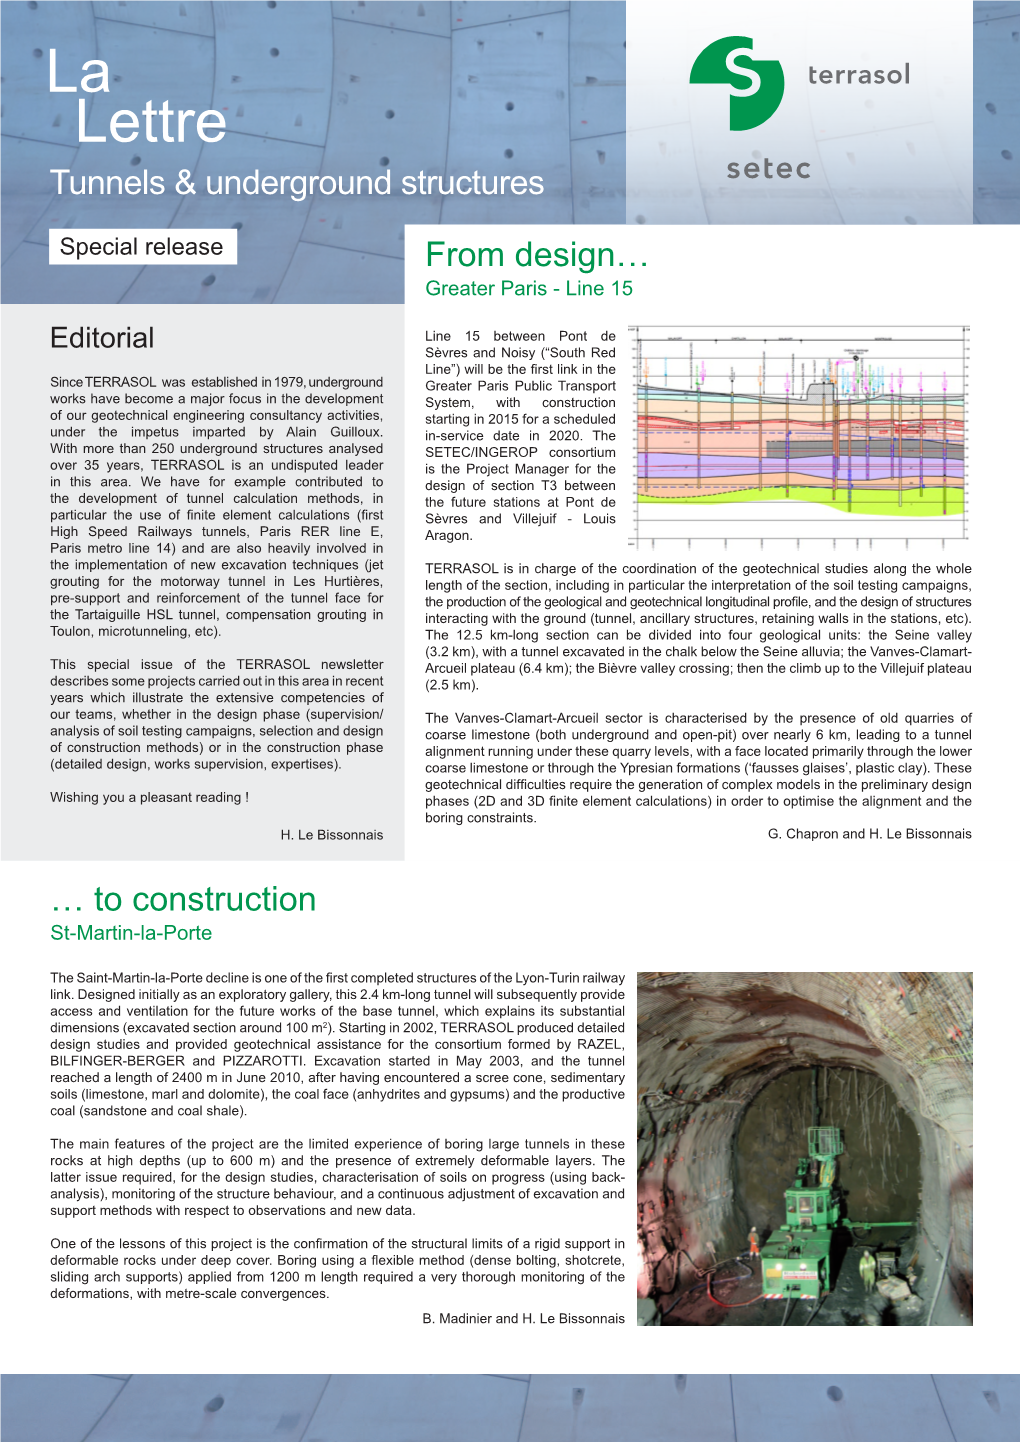 La Lettre Tunnels & Underground Structures